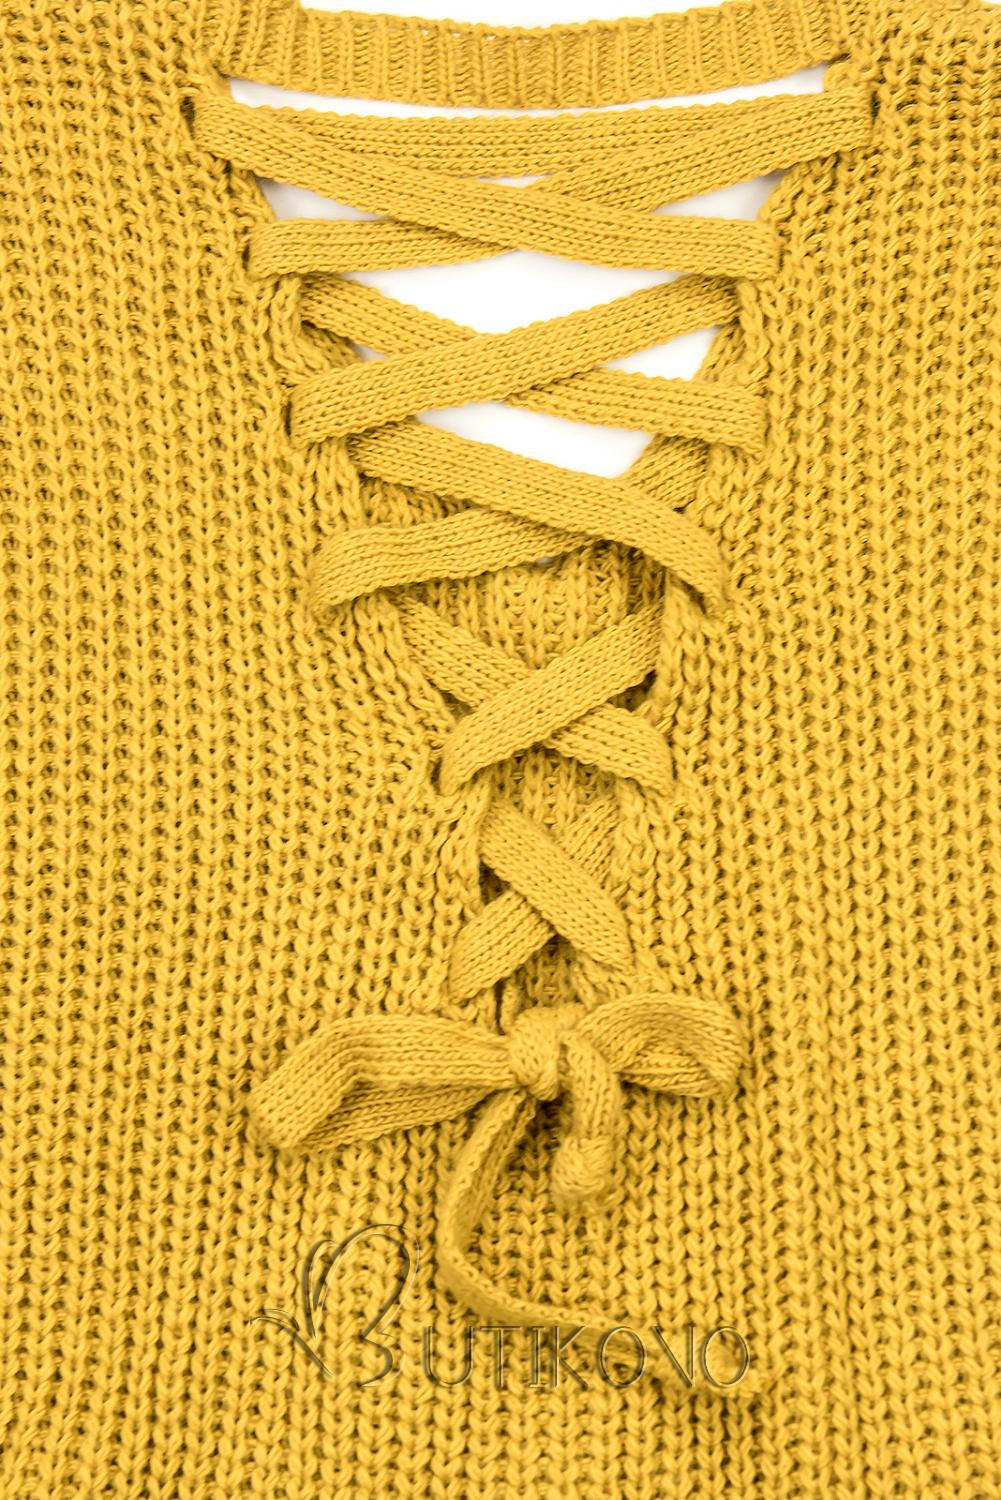 Horčicovožltý sveter so šnurovačkou